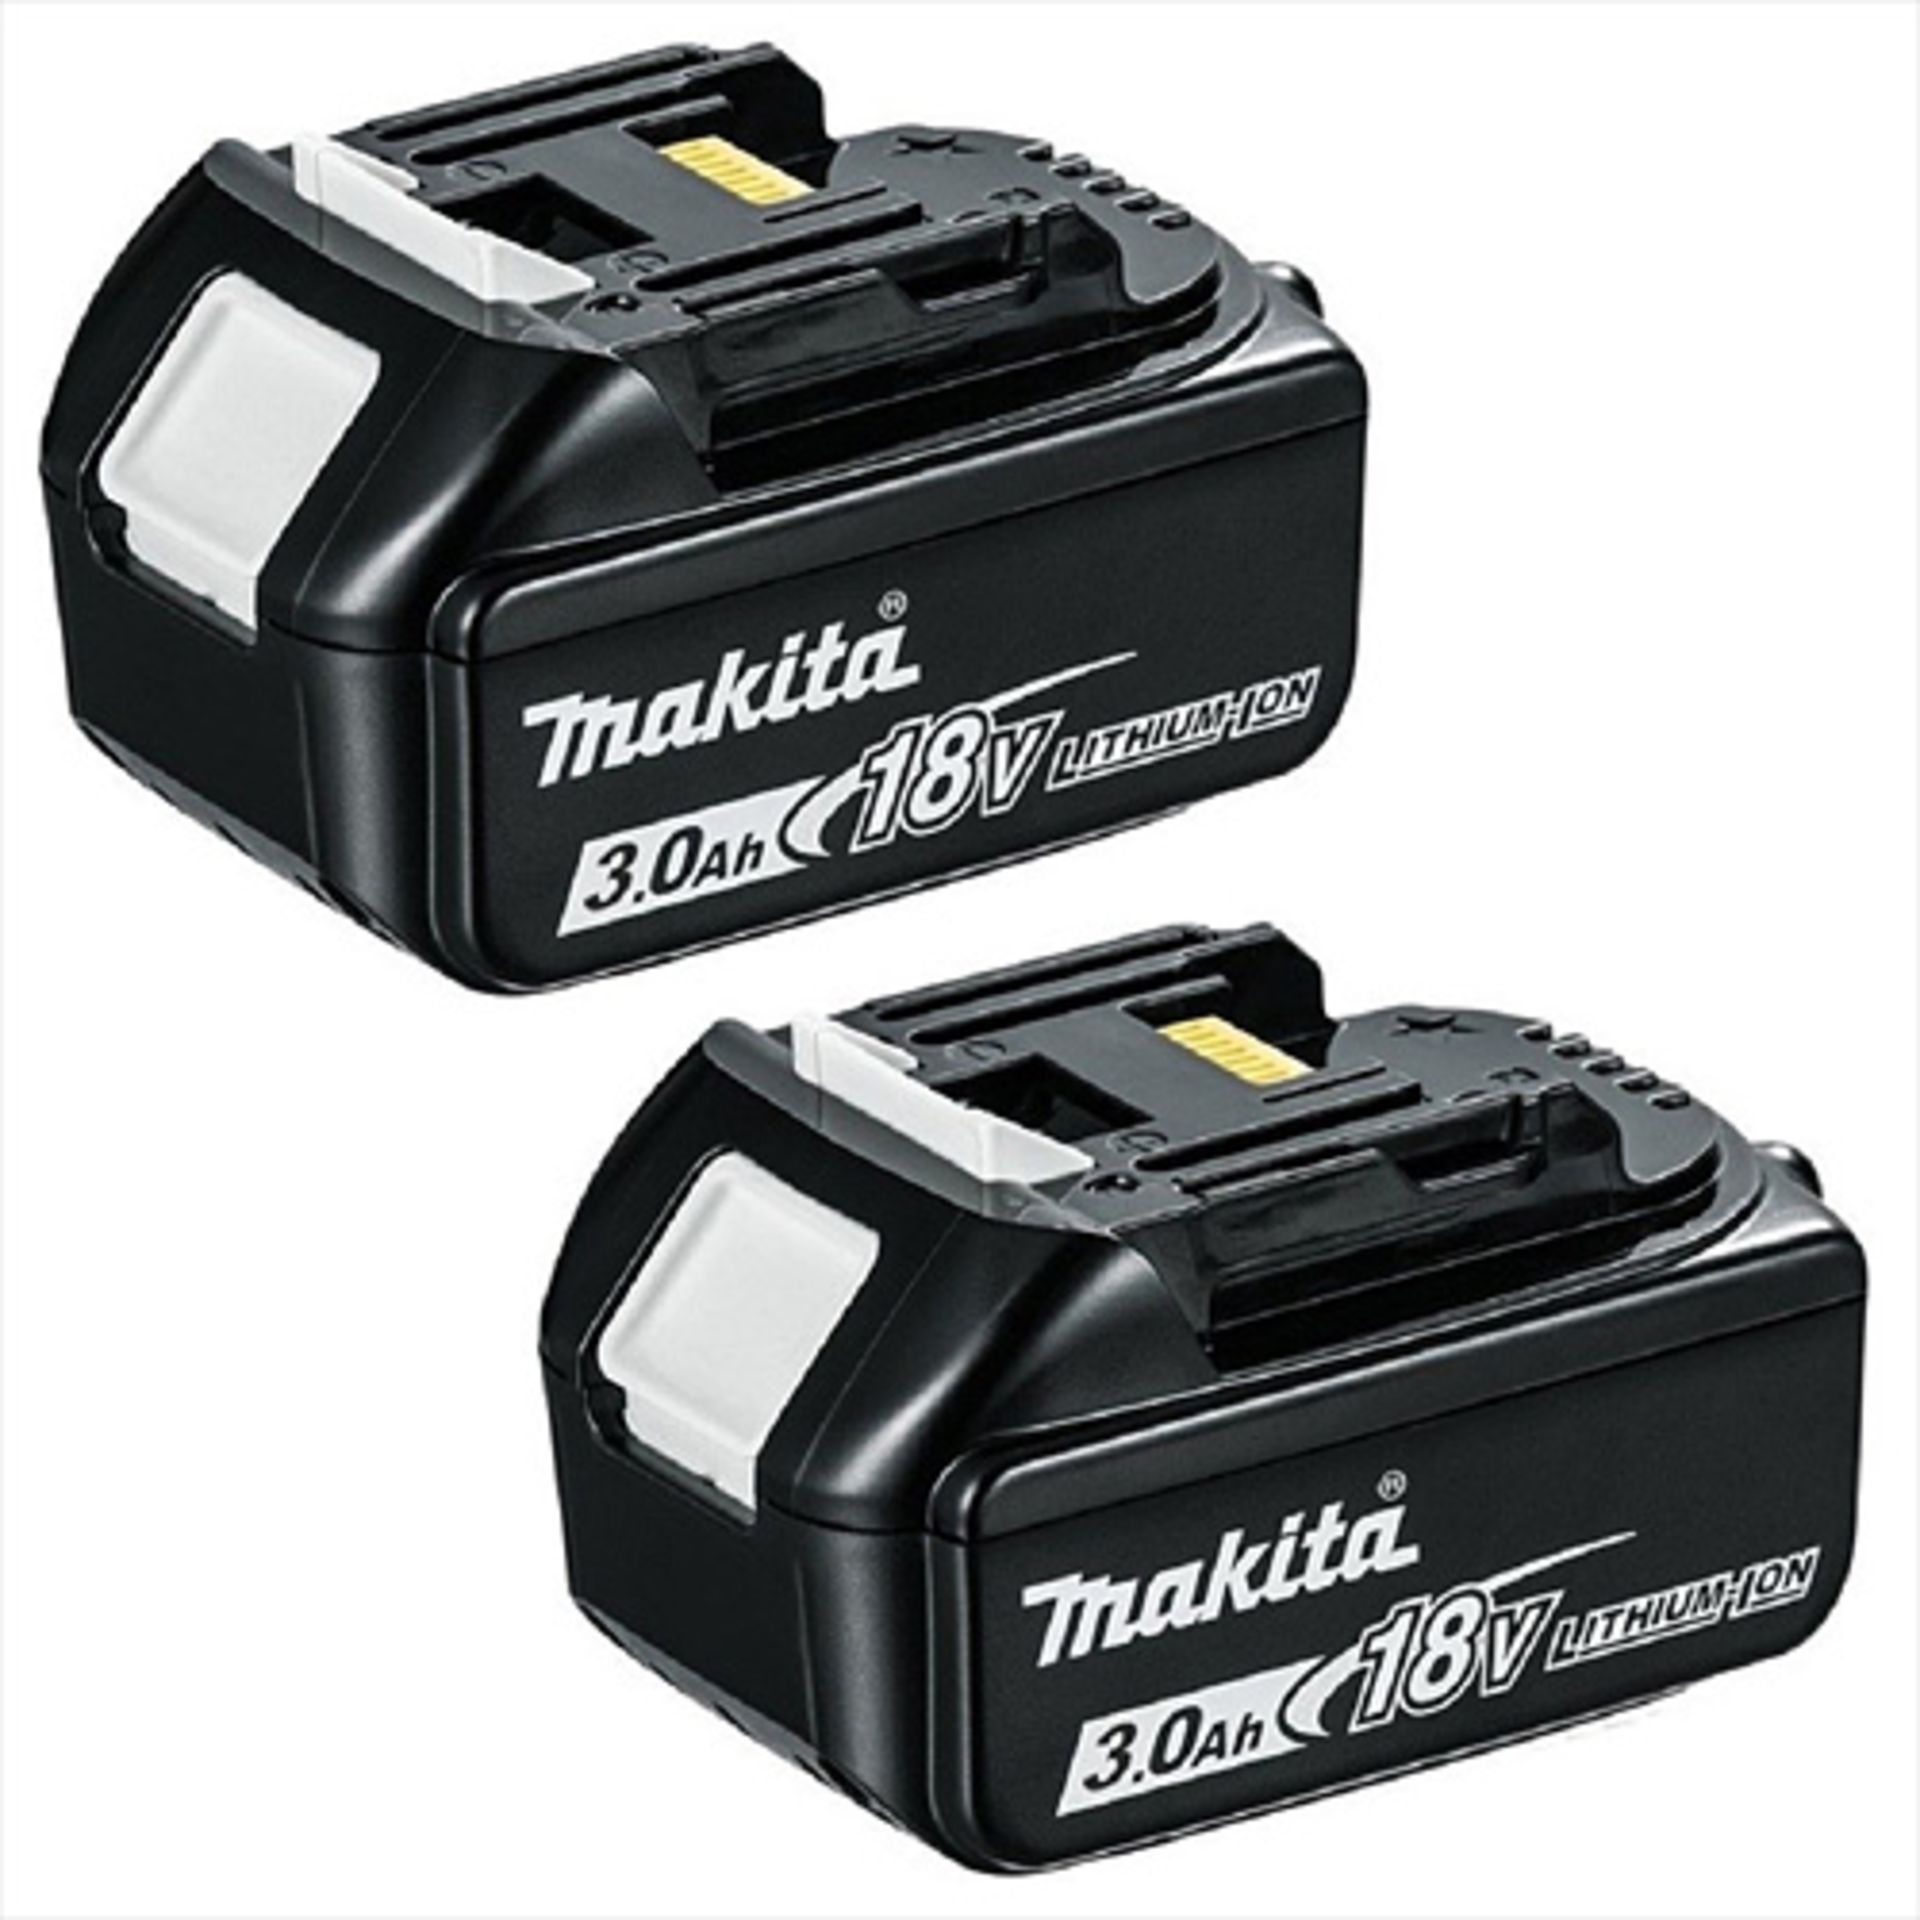 V Brand New Makita 18v 3.0Ah Battery Twin Pack